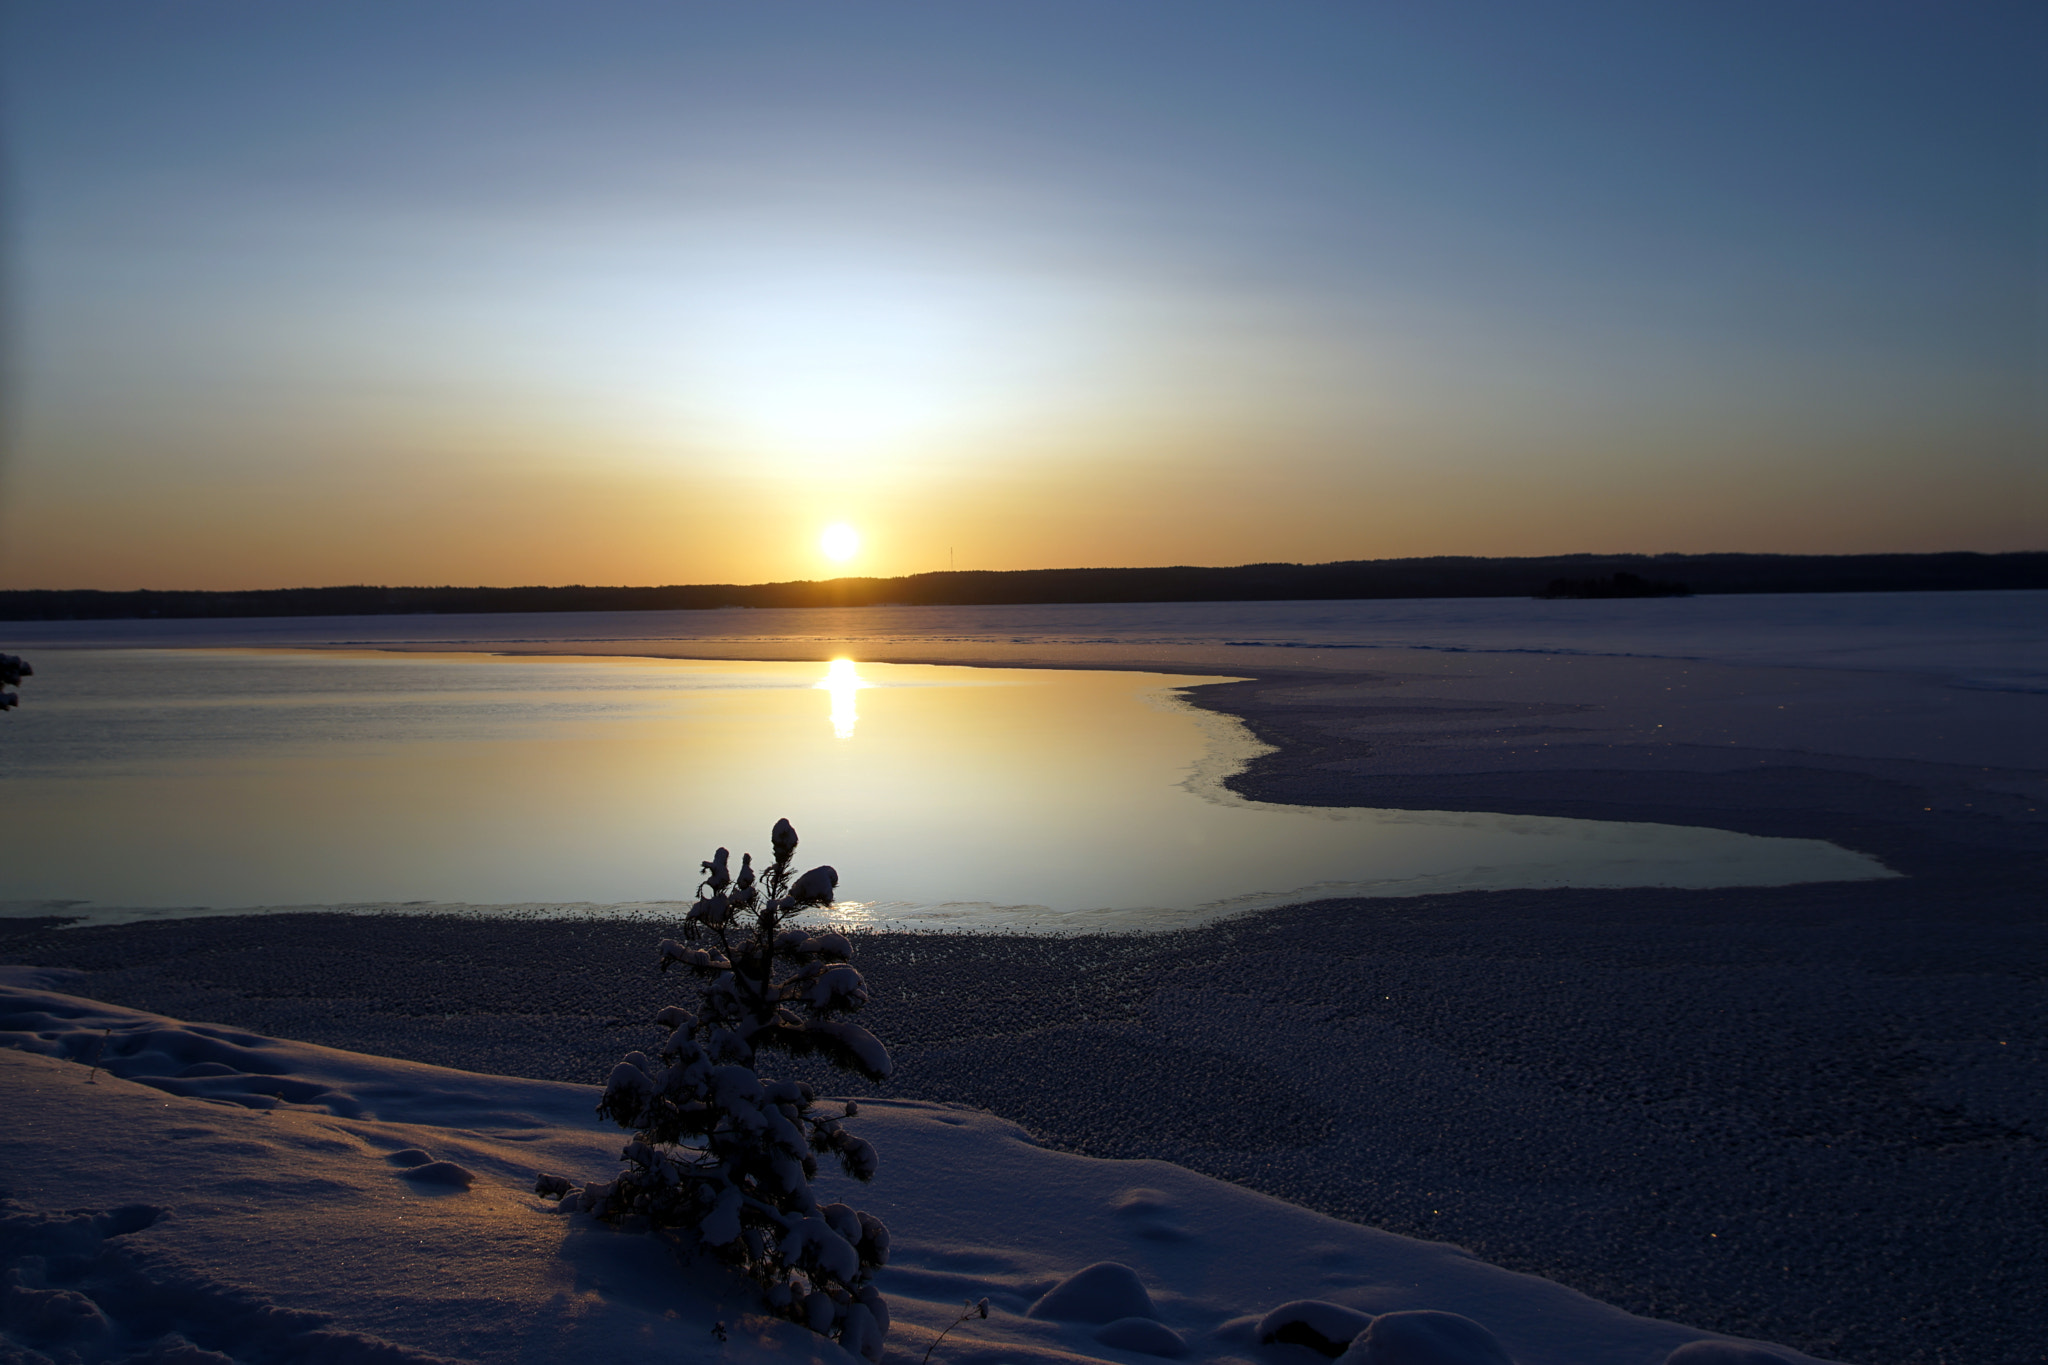 Sony SLT-A68 sample photo. Päijänne lake, sunset @finland photography